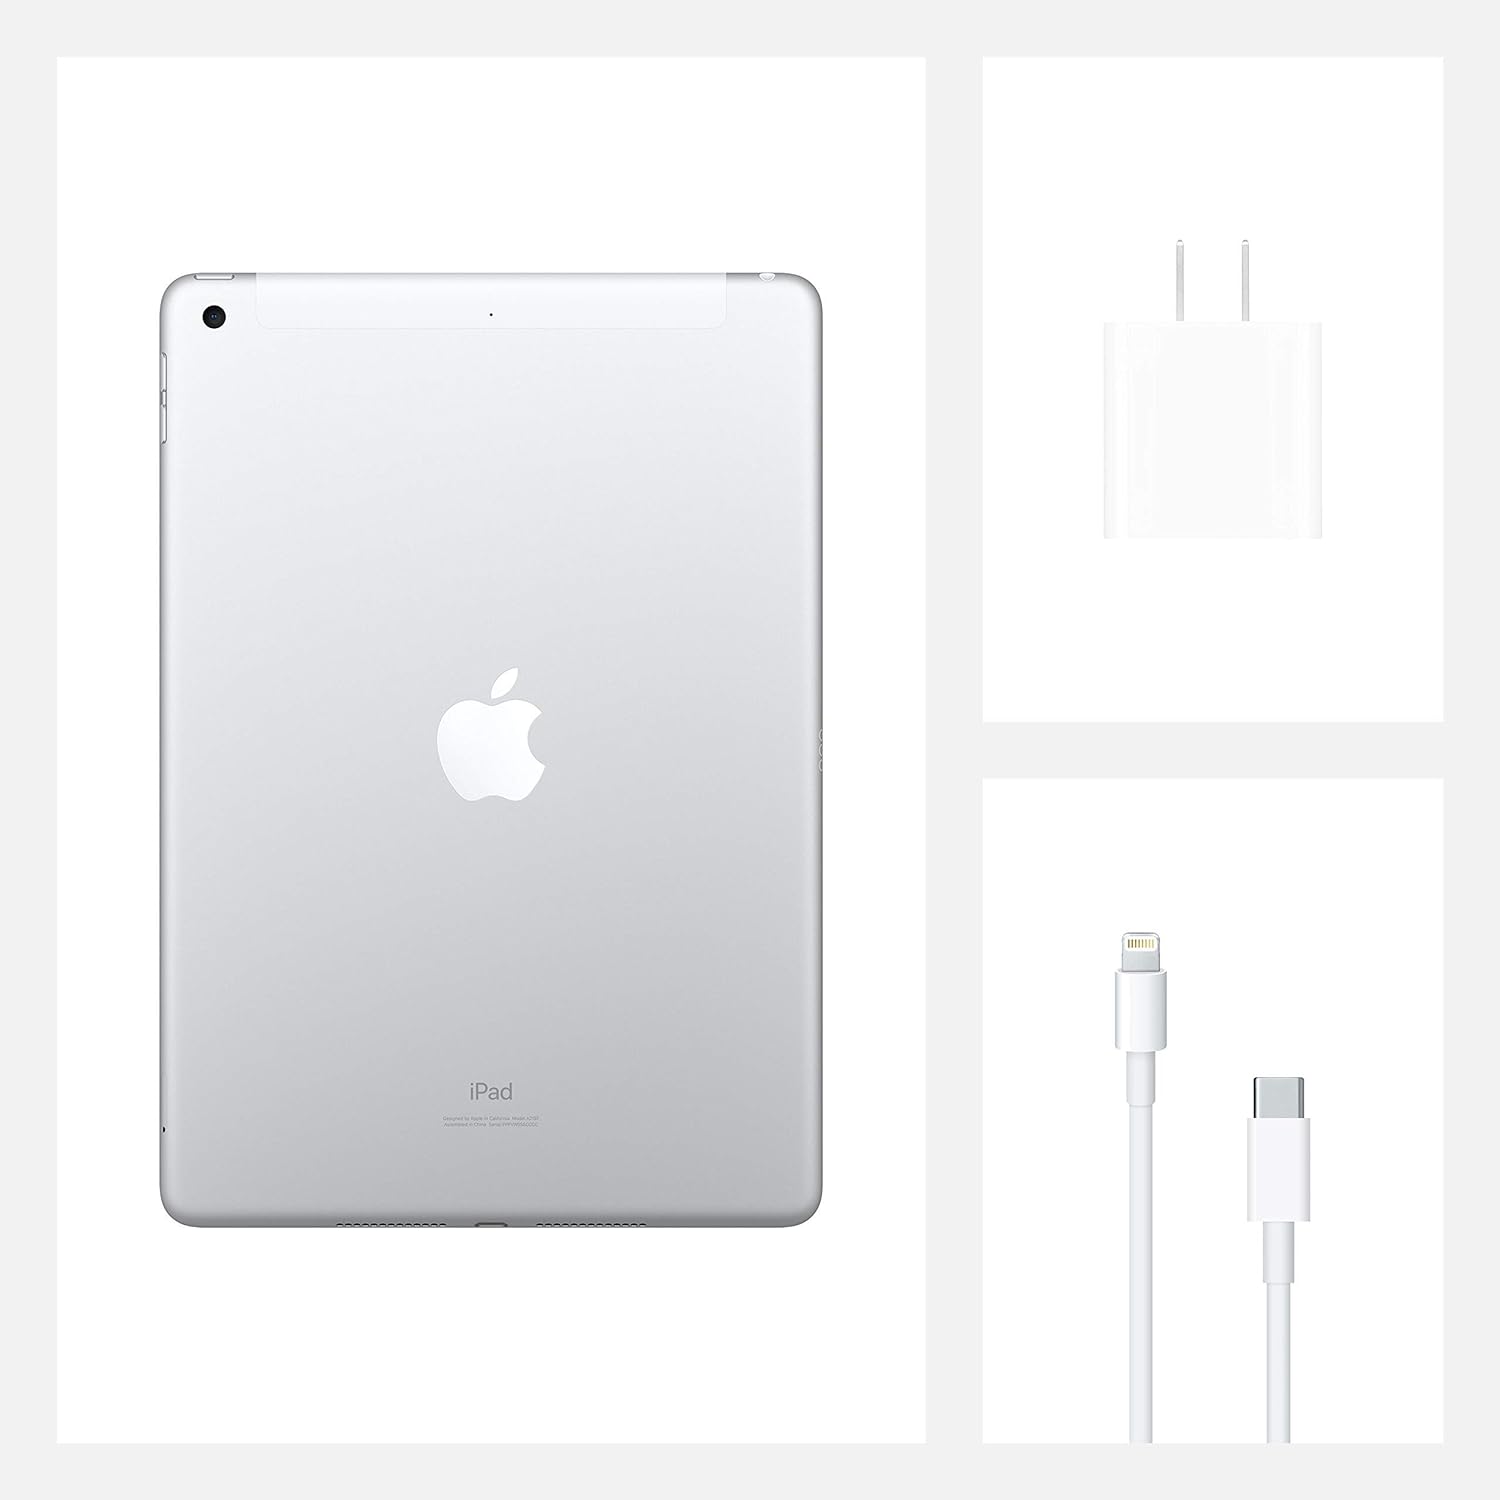 2020 Apple iPad (10.2-inch, WiFi, 32GB) - Silver (Renewed Premium)